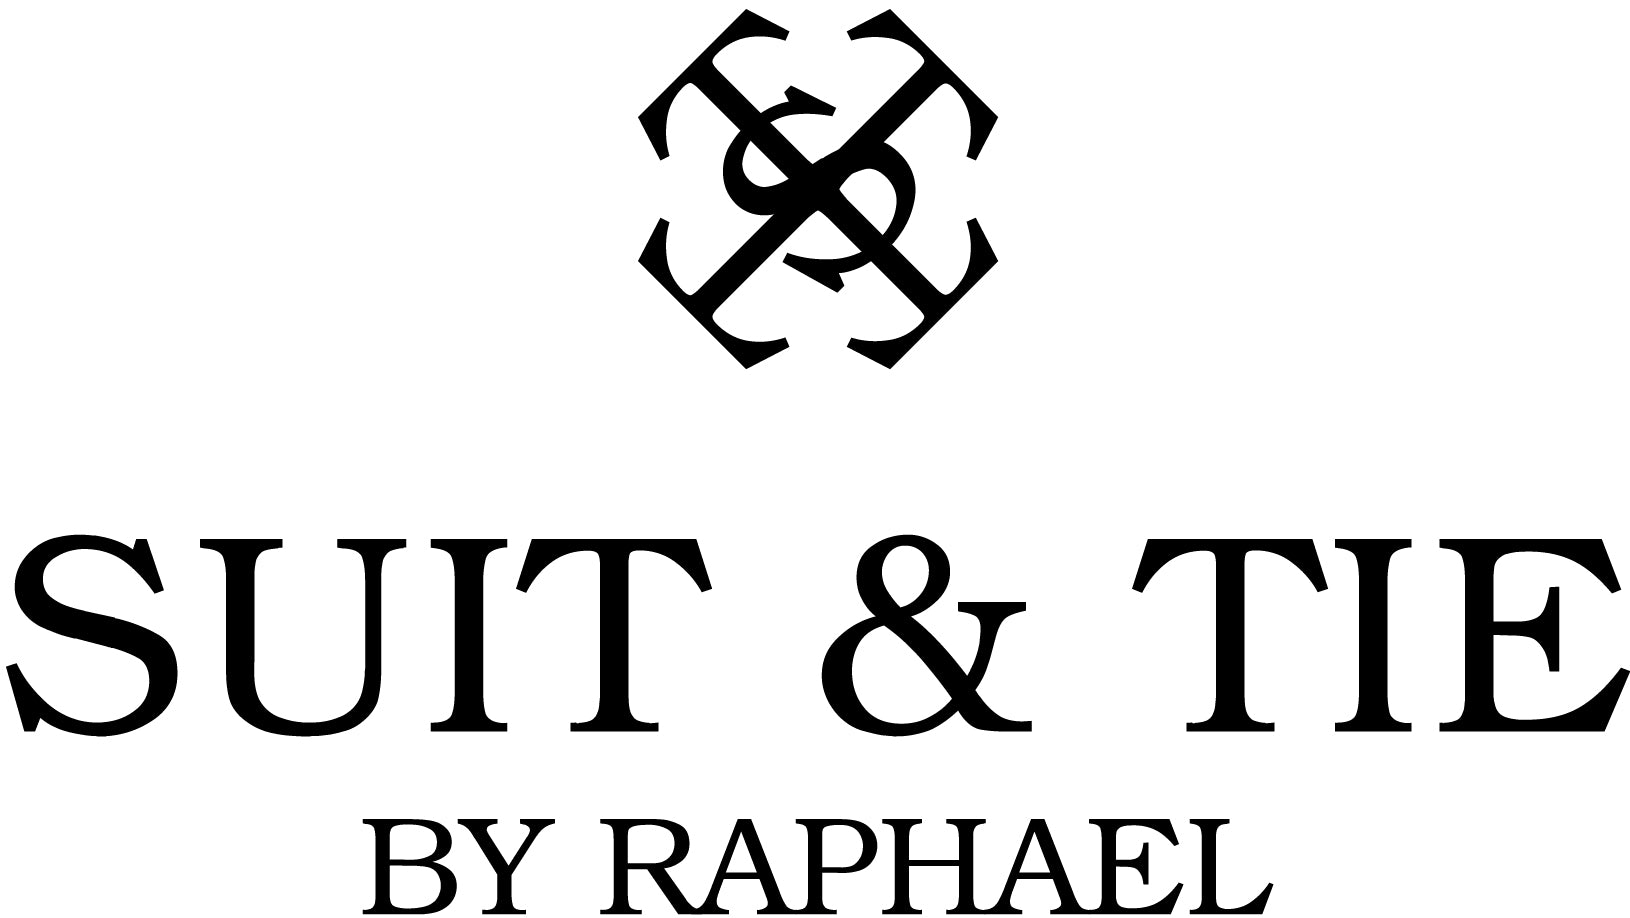 Suit & Tie by Raphael